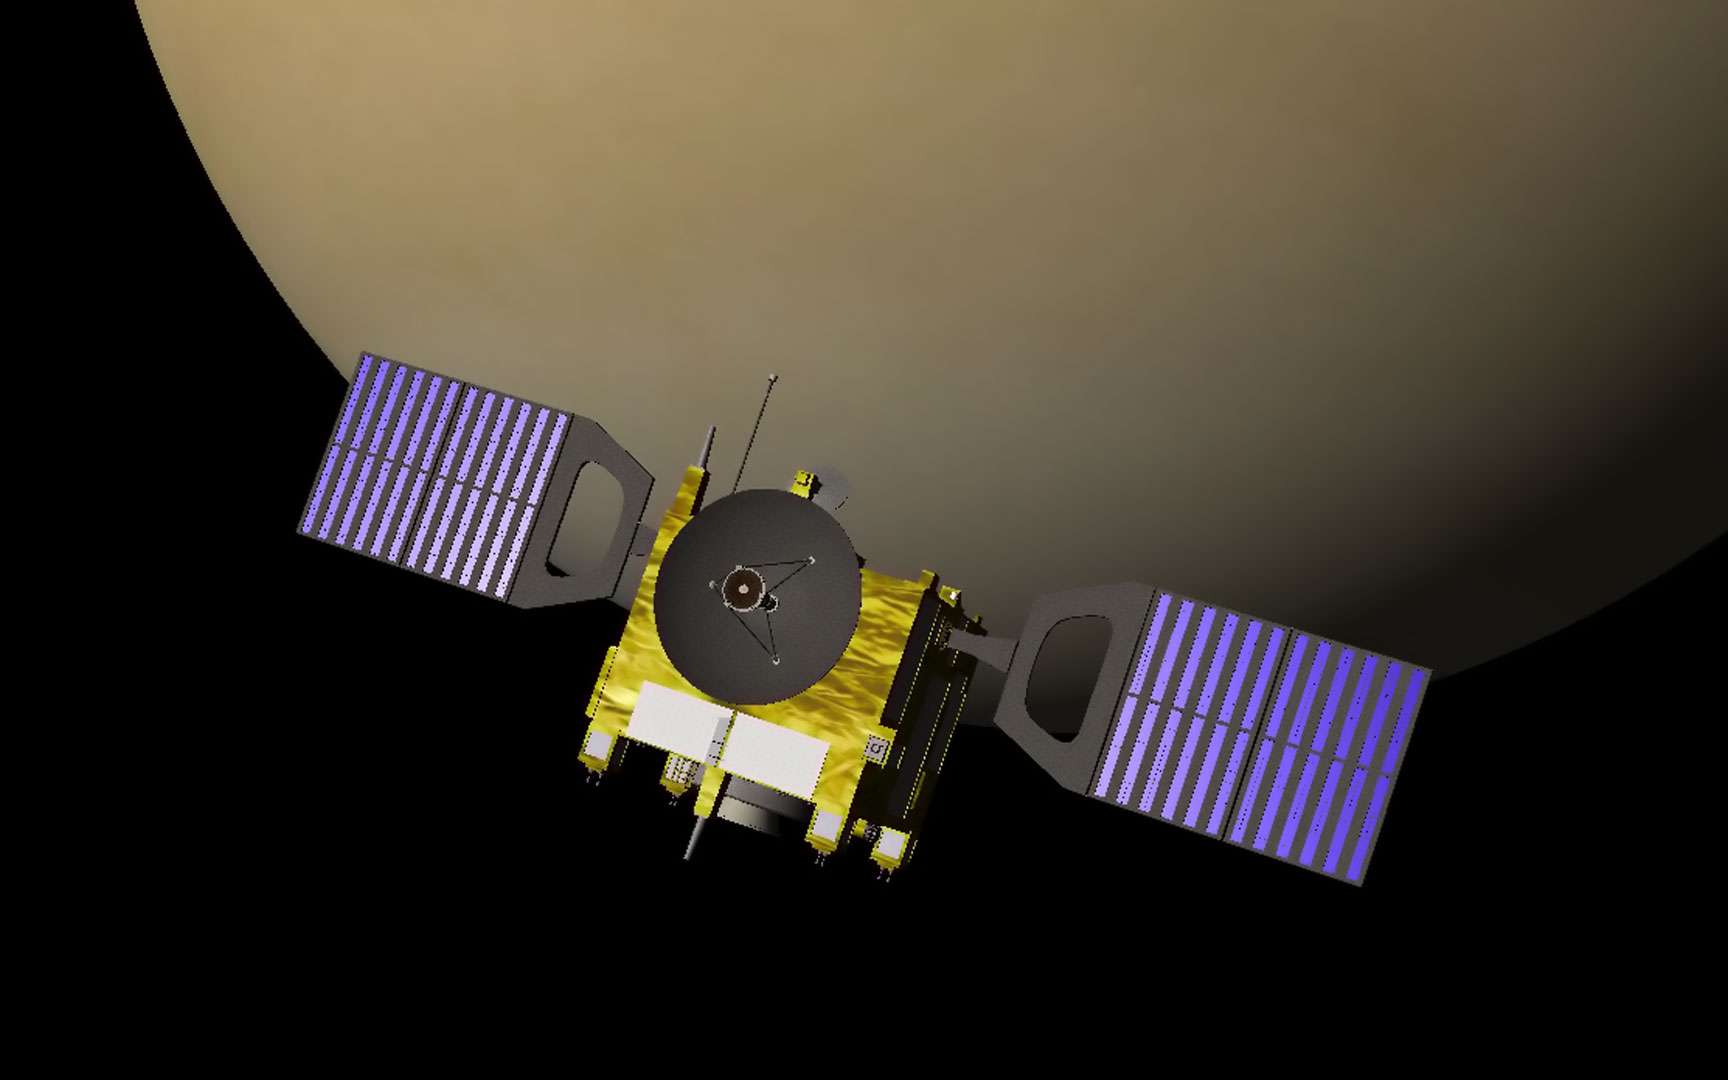 Venus Express. Venus Express est une mission de l'Agence spatiale européenne à destination de la planète Venus. San lancement est prévu en novembre 2005.